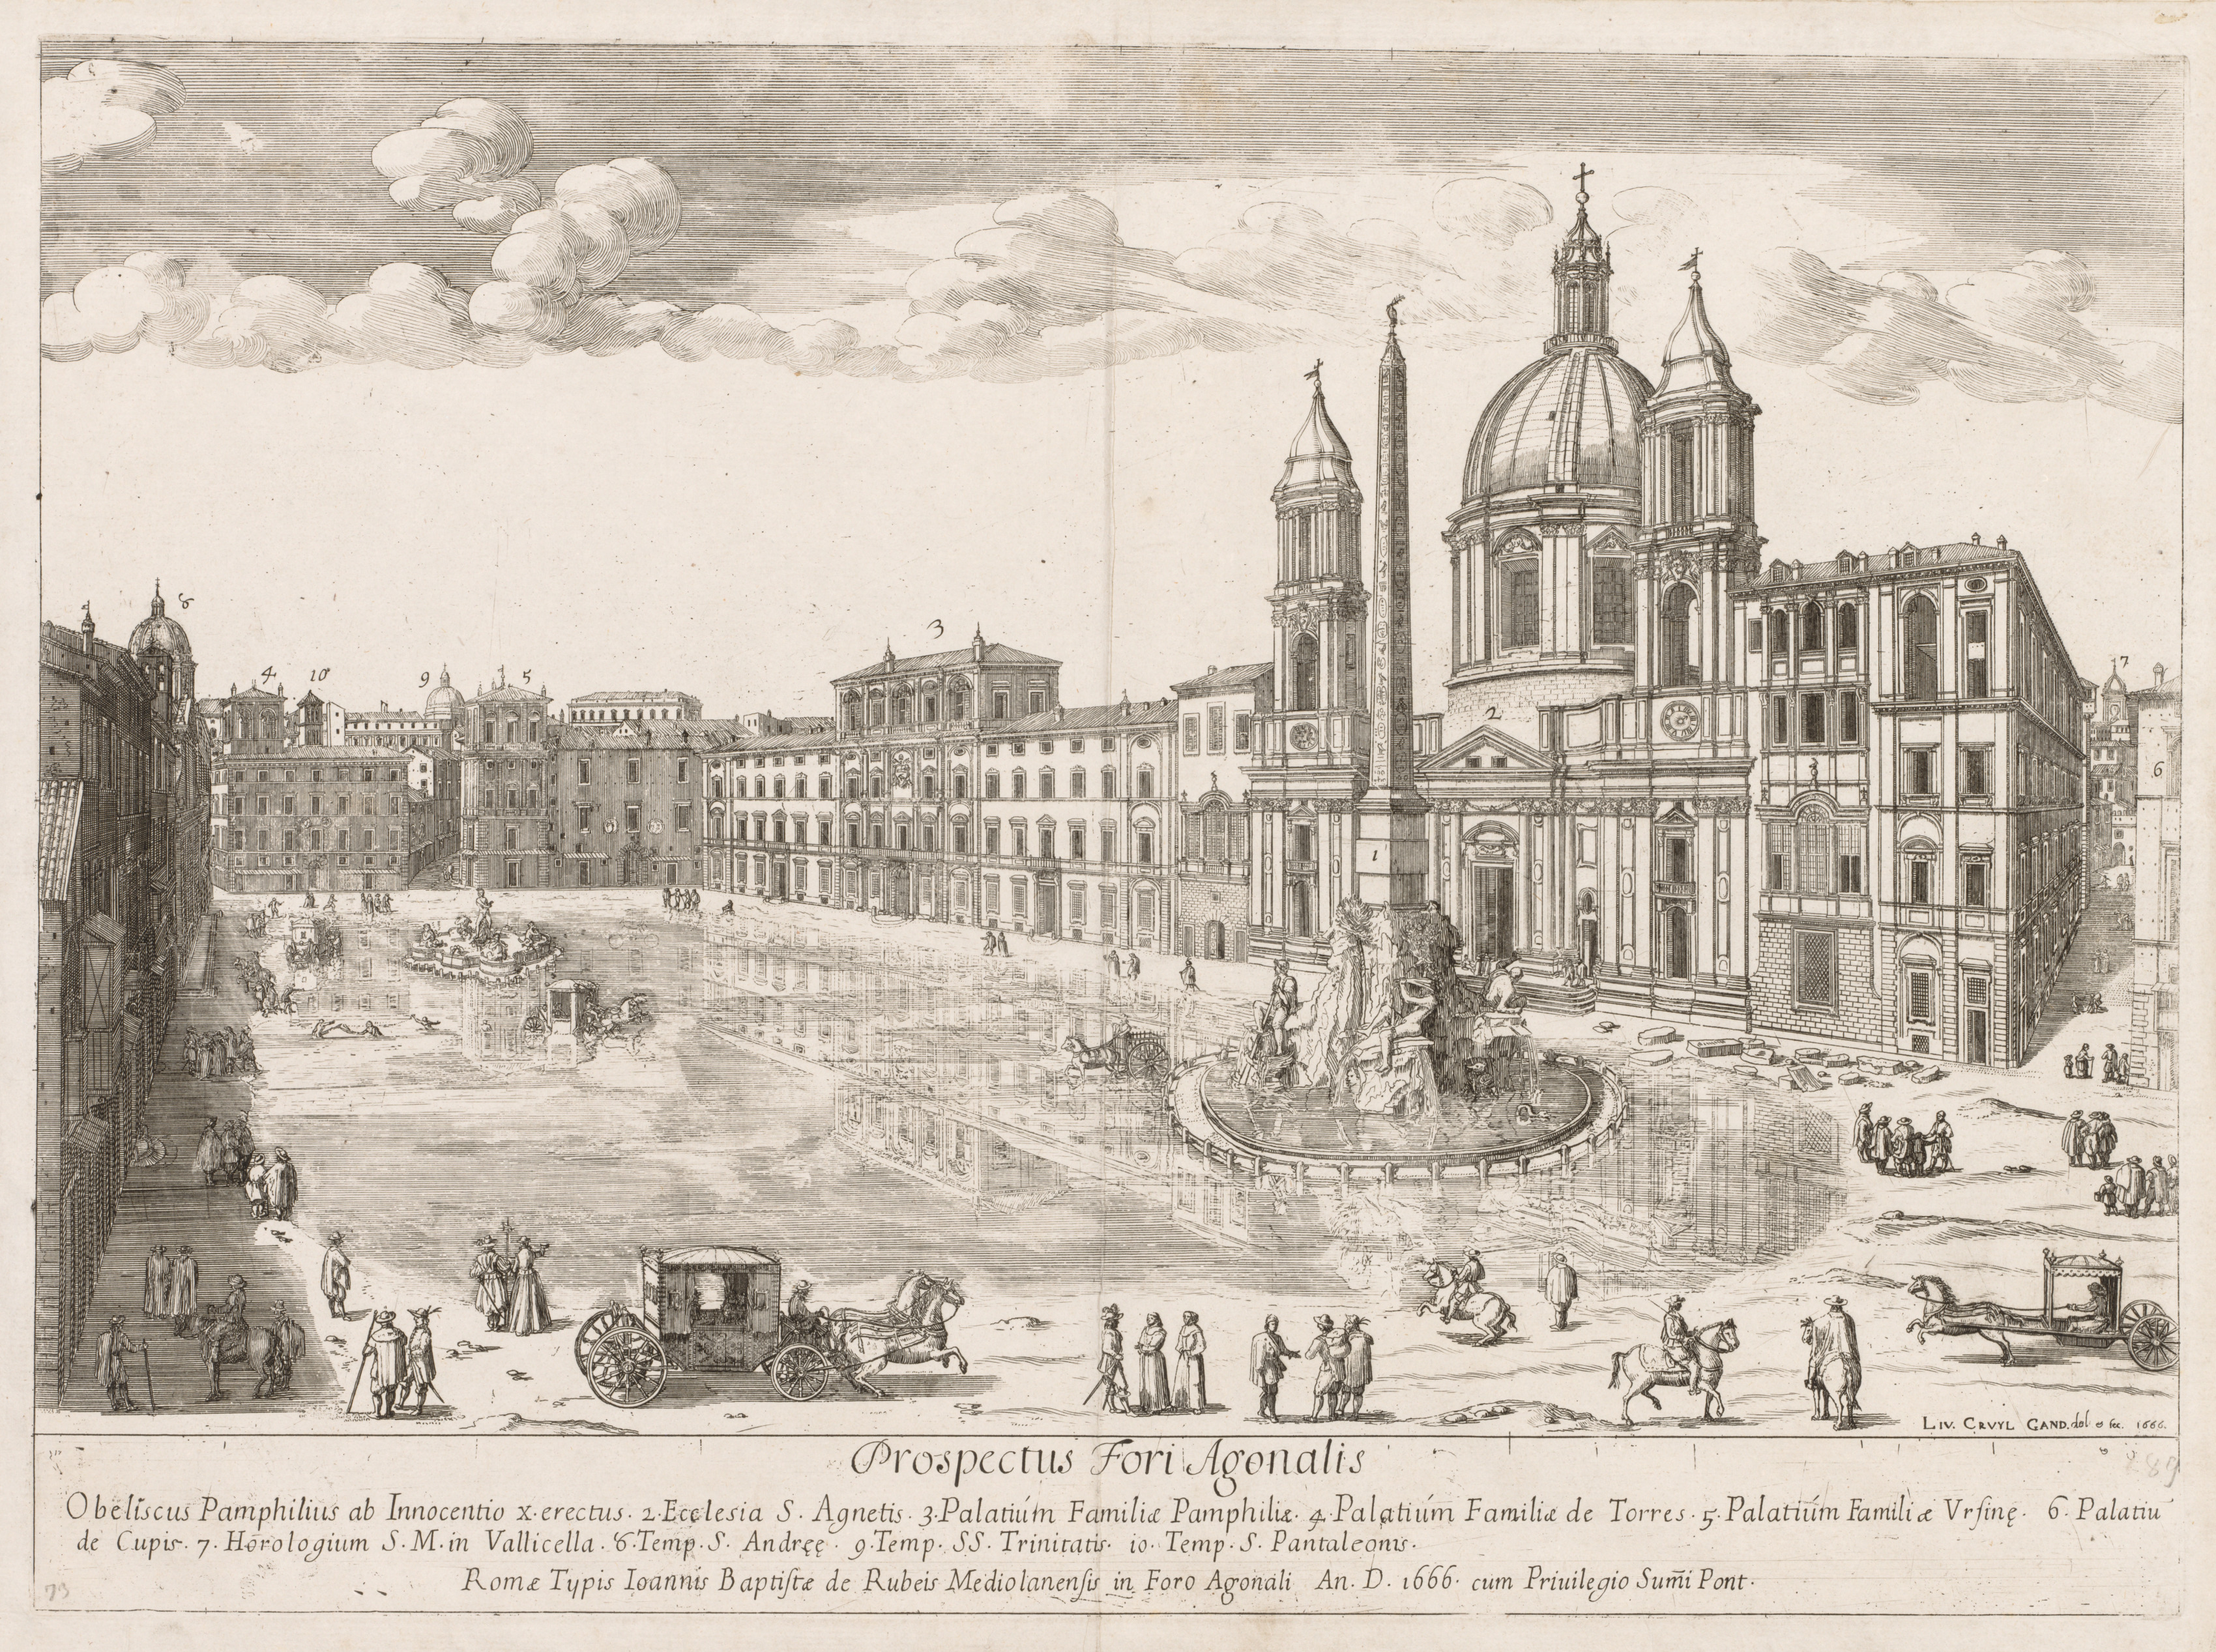 Piazza Navona from "Prospectus Locurum Urbis Romae Insign[ium]